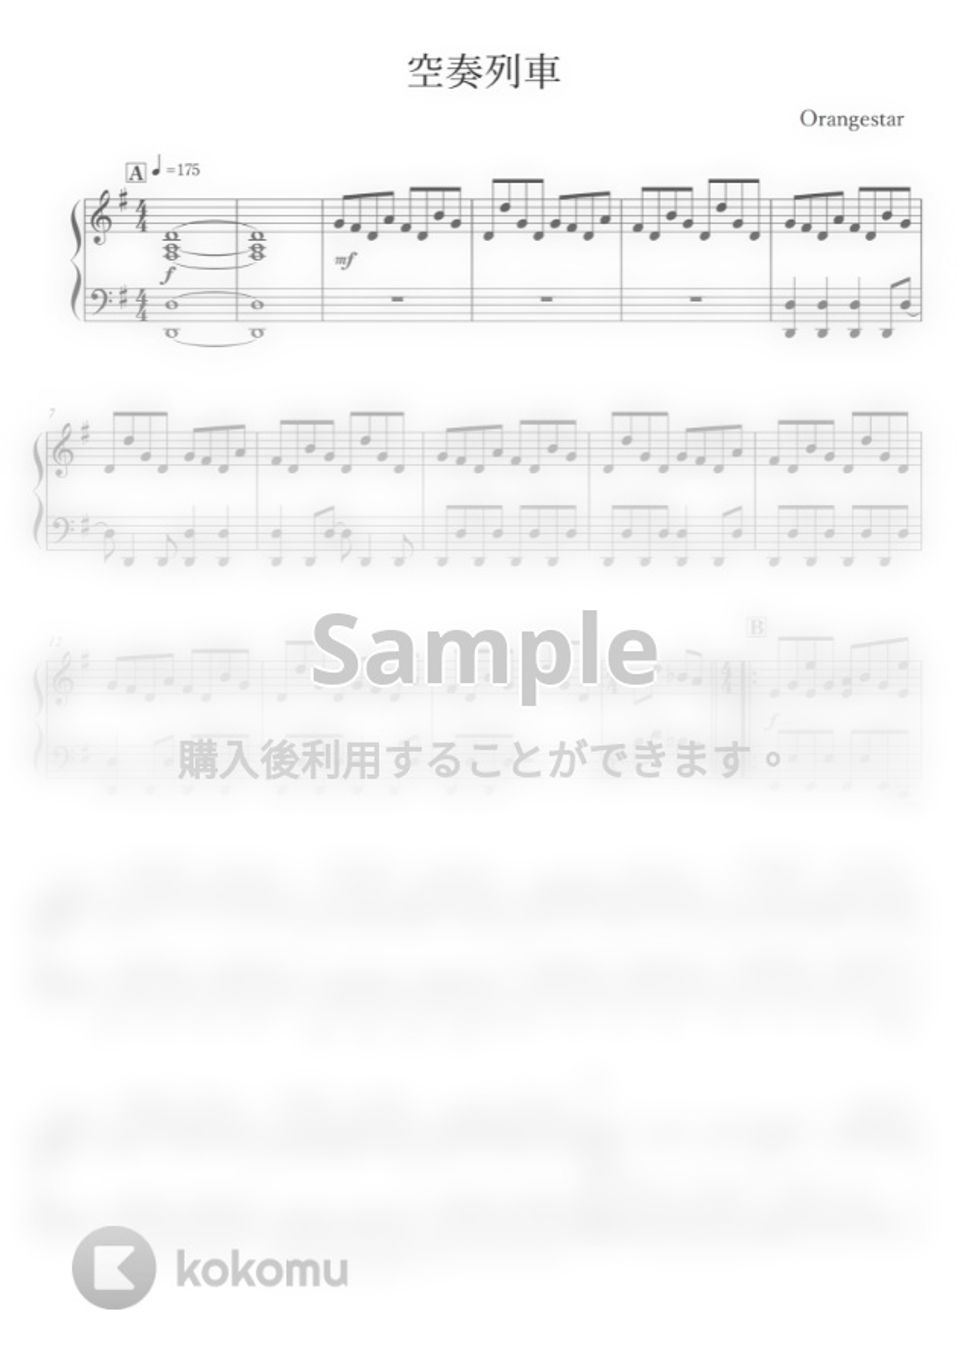 大人気の 空奏列車/Orangestar バンドスコア | kyocanoco.co.jp